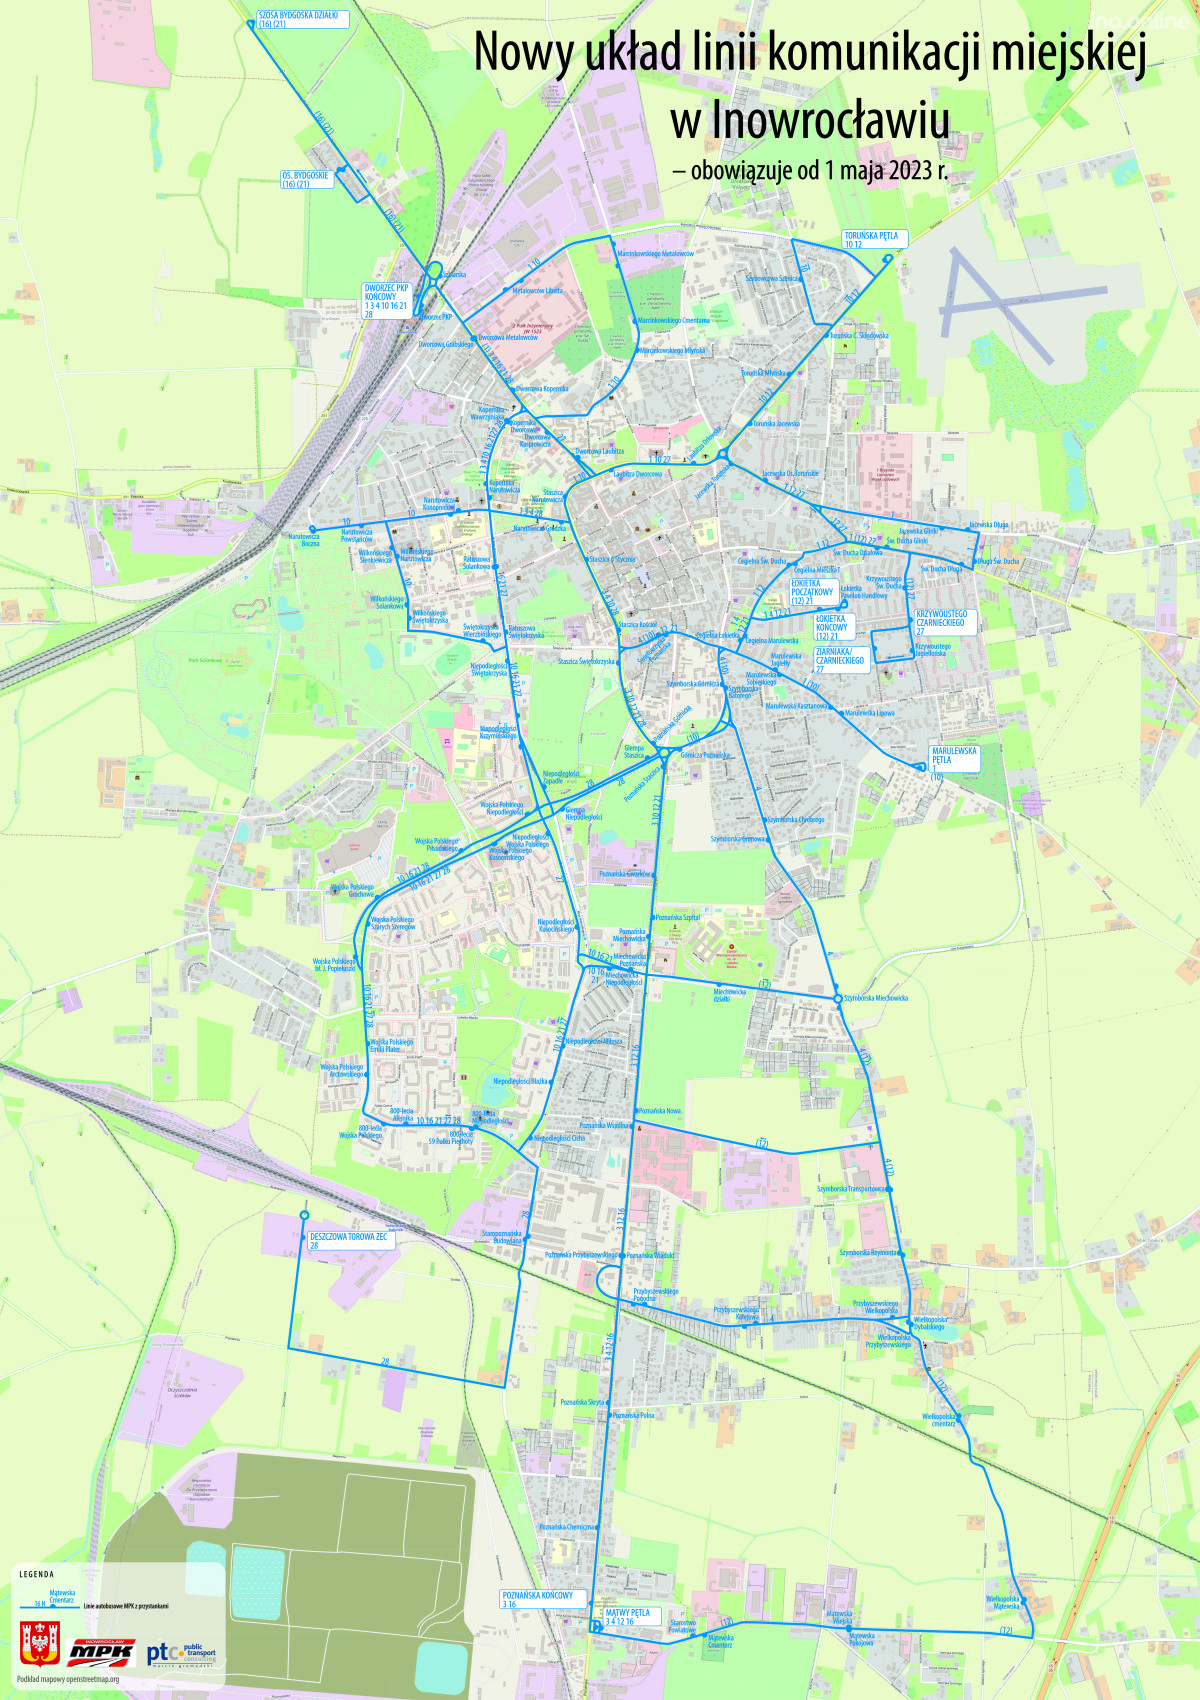 Nowy układ linii komunikacji miejskiej w Inowrocławiu (obowiązuje od 1 maja)